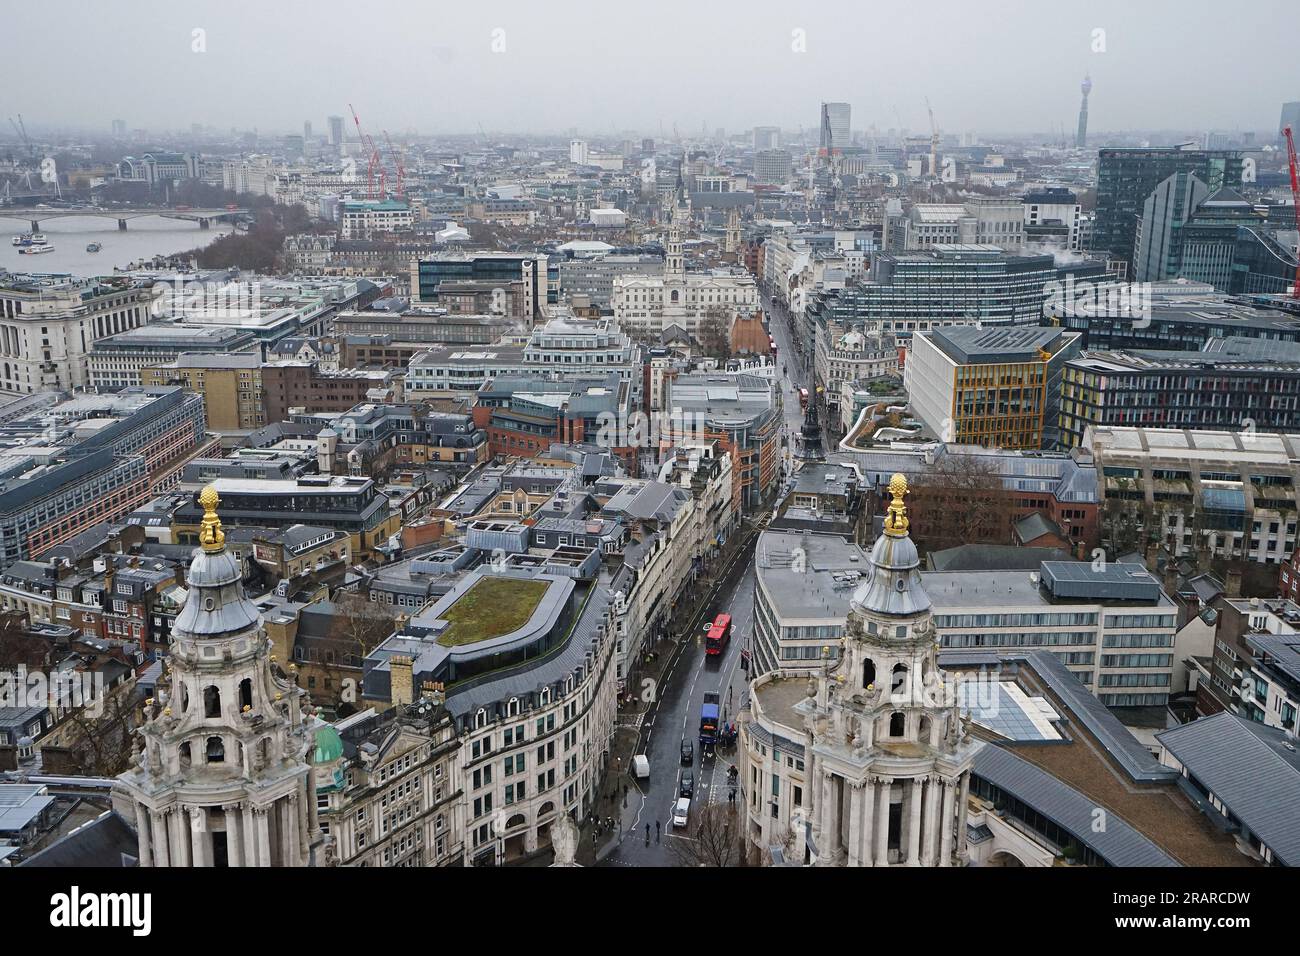 Architecture extérieure et design de vue aérienne de dessus du paysage urbain et de l'horizon de Londres depuis la terrasse sur le toit de la cathédrale St Paul - Angleterre, Royaume-Uni Banque D'Images